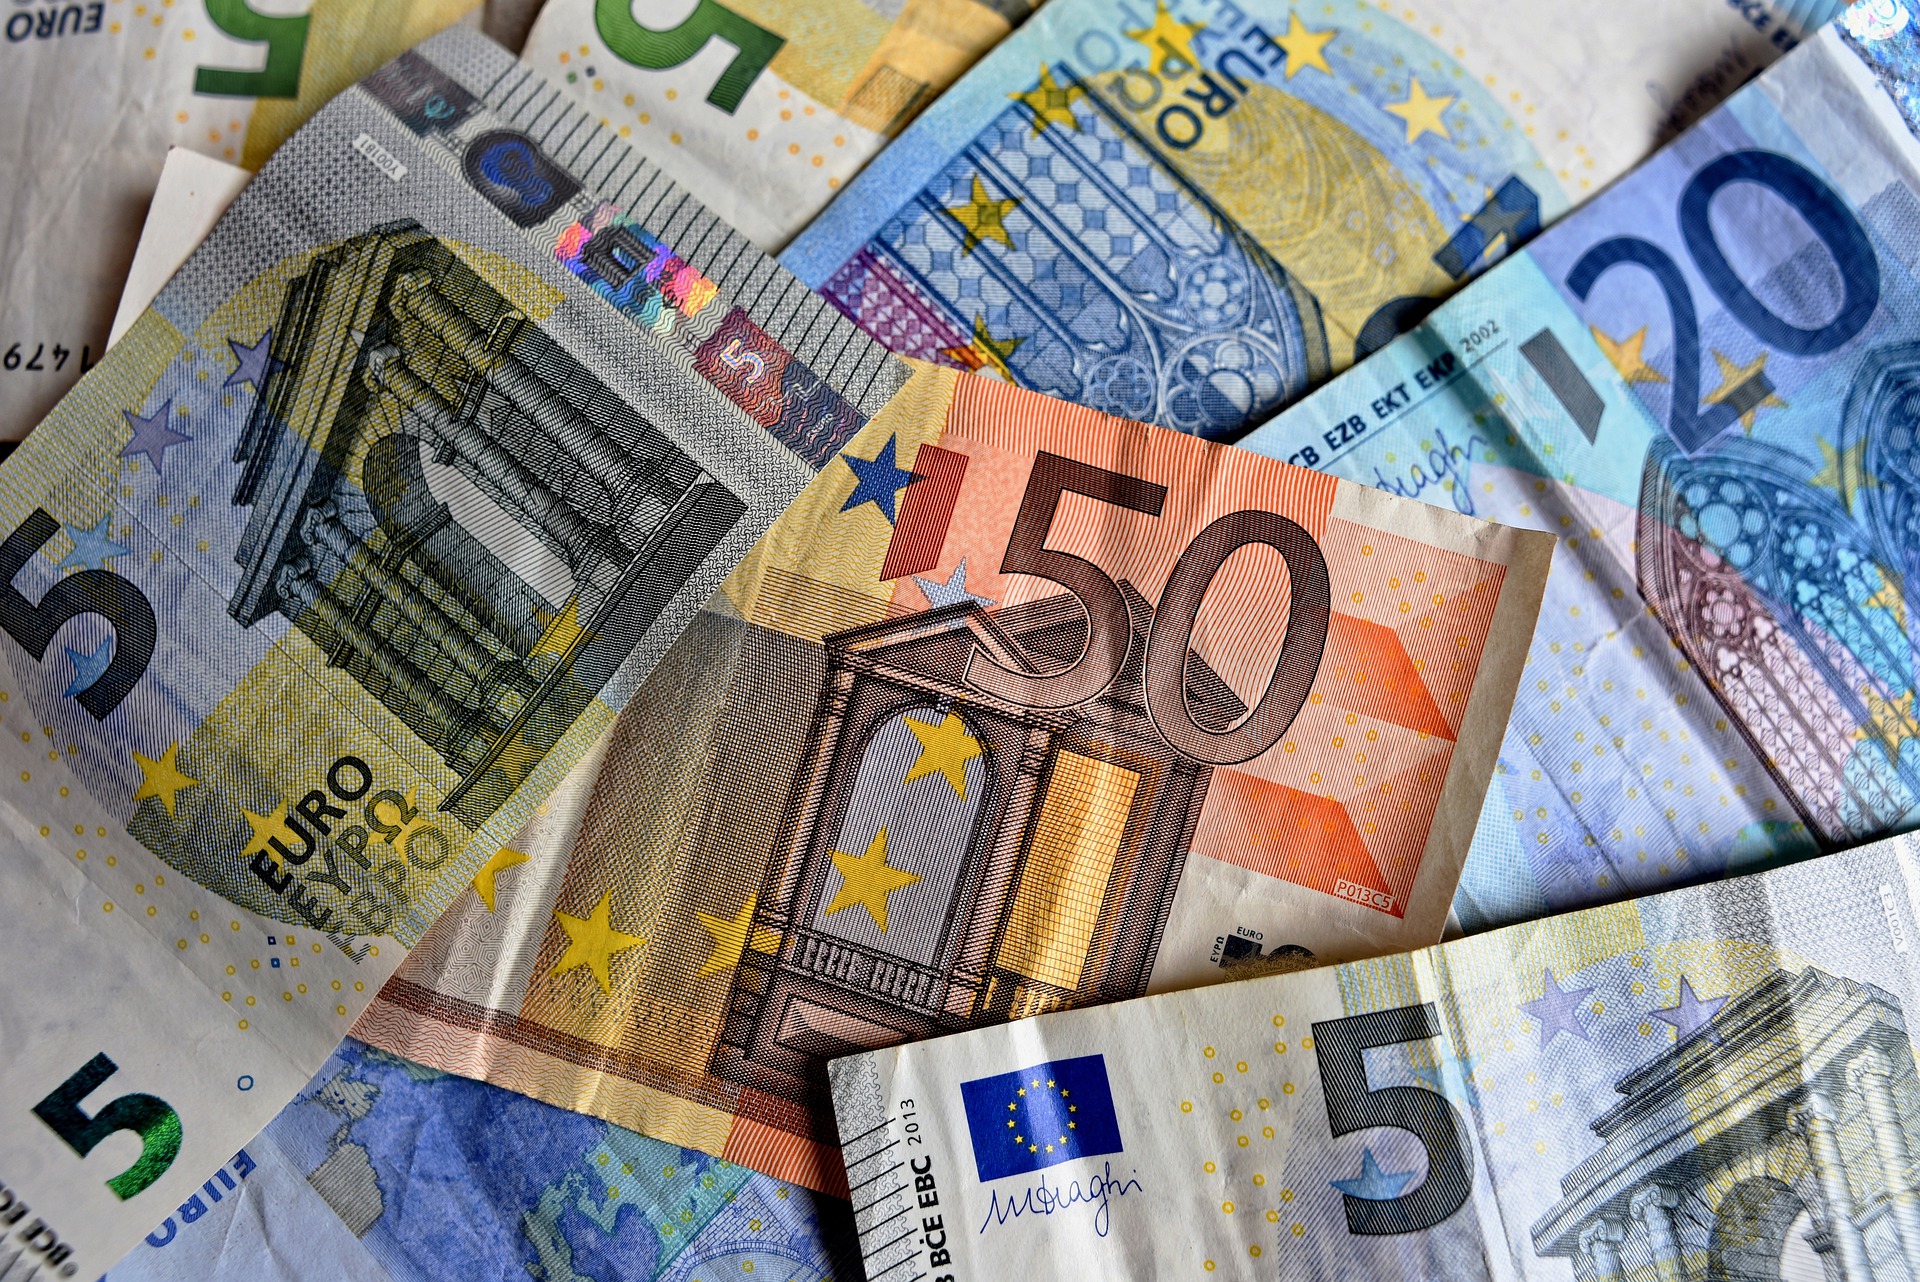 422 forintról rántották vissza a történelmi mélyponton lévő eurót